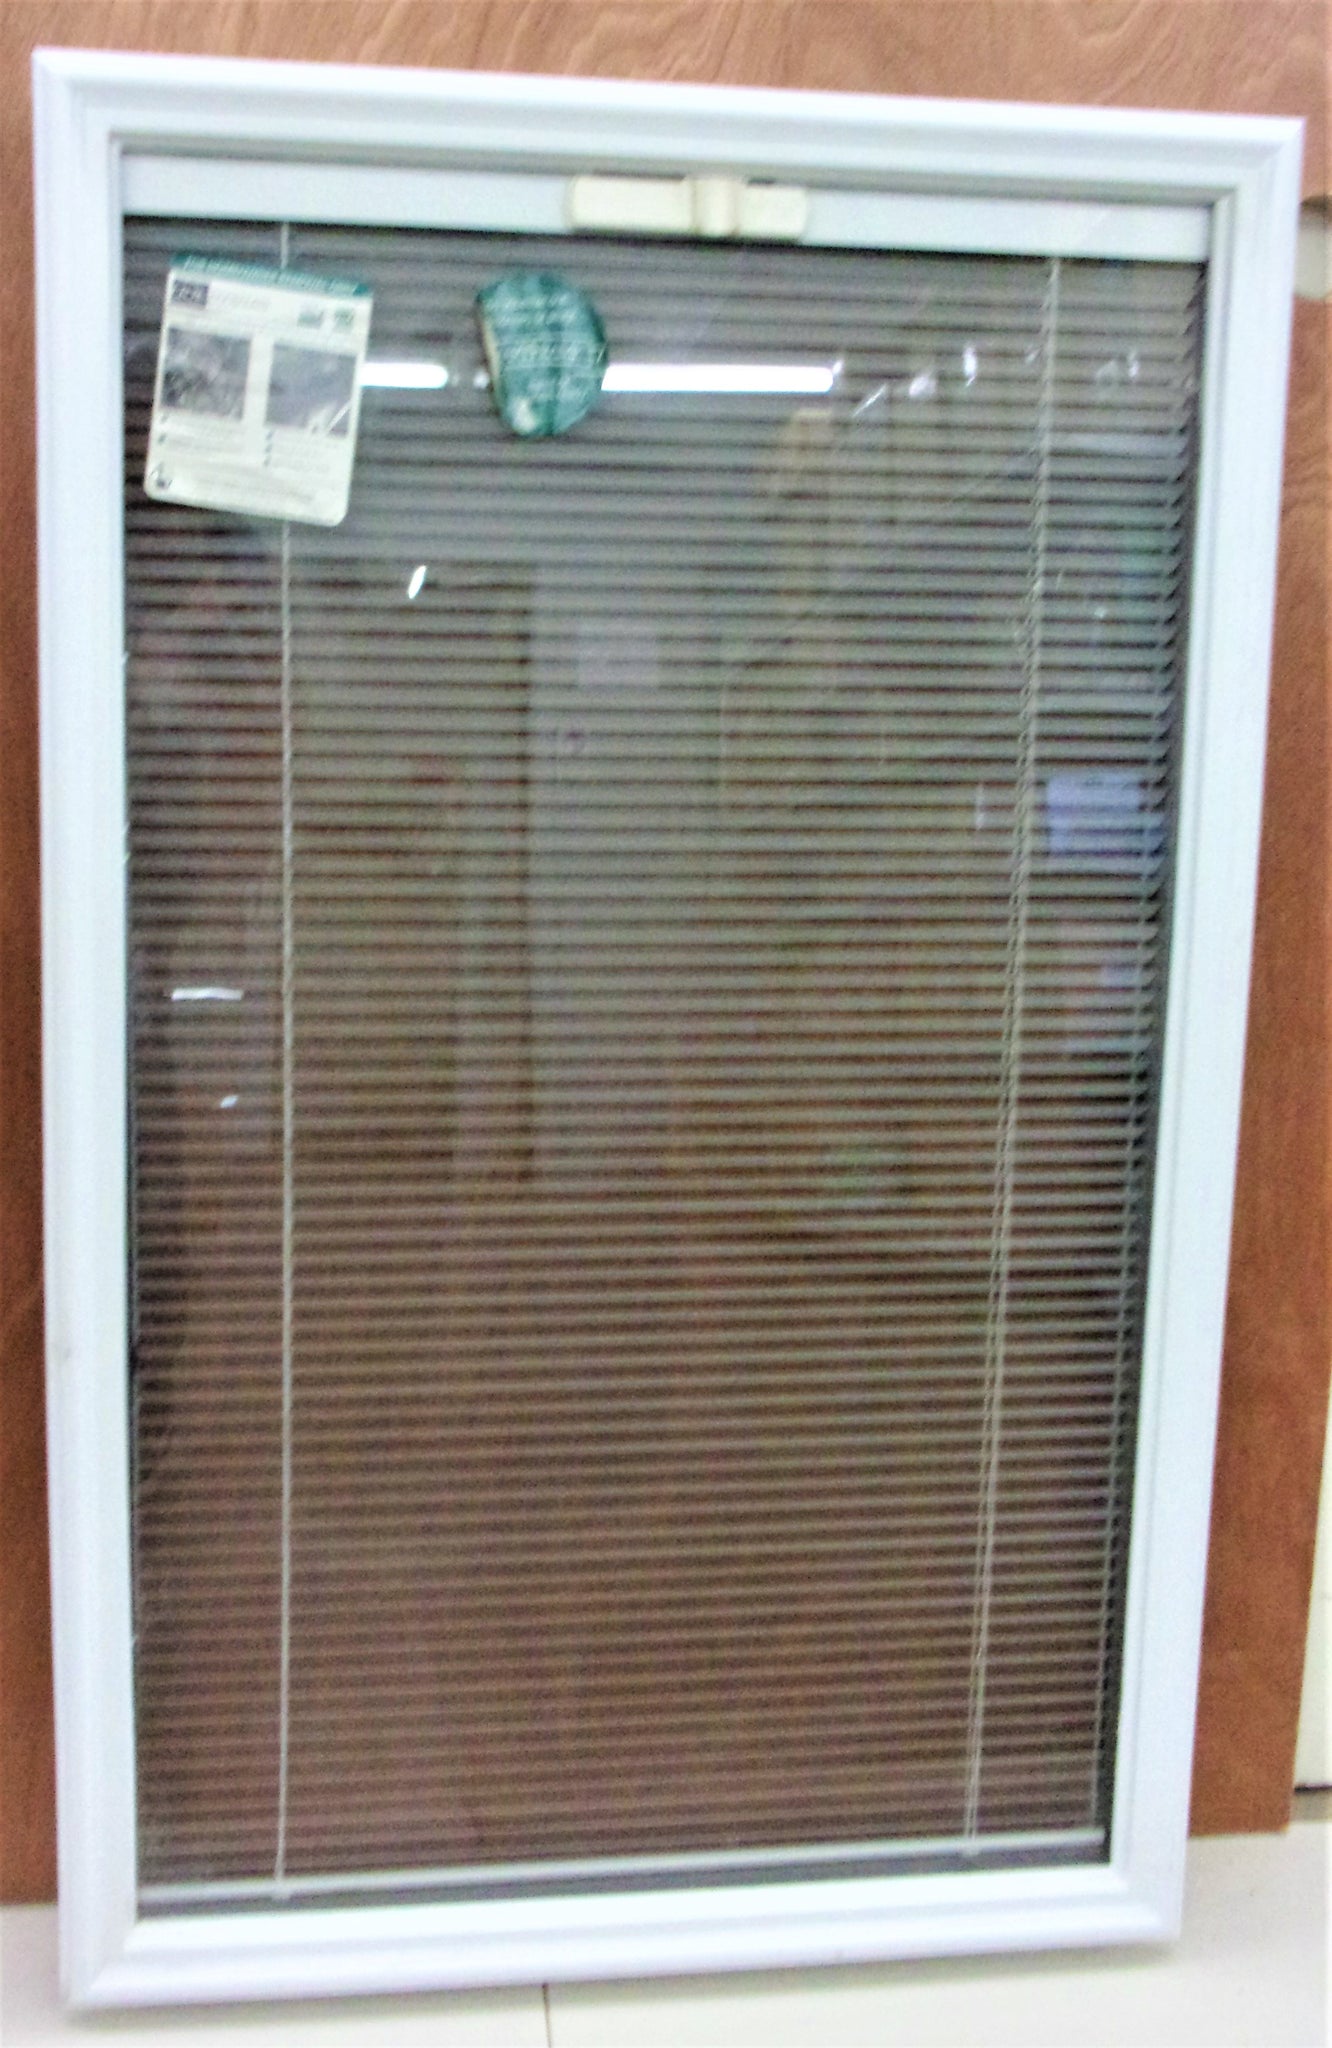 ODL - Inserciones de vidrio de media puerta delantera transparente – SoloHardware